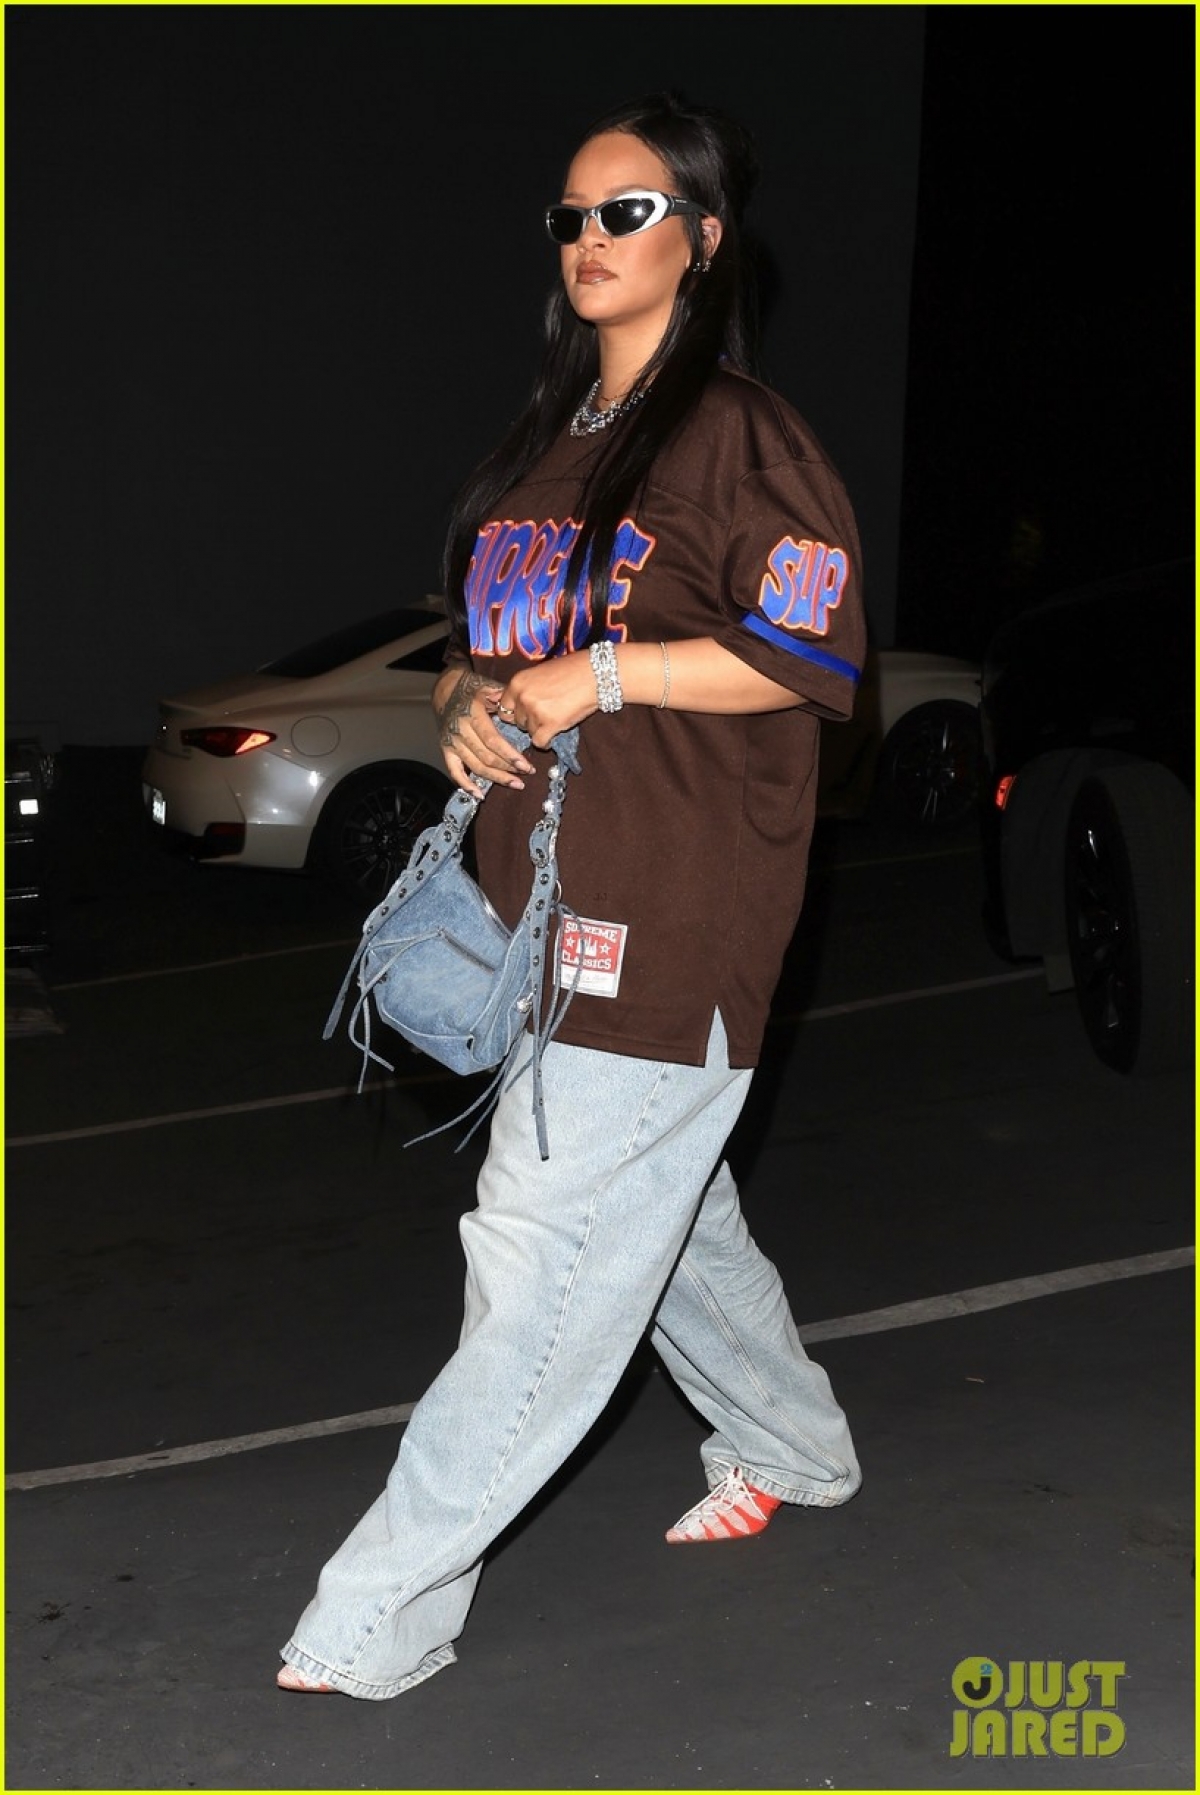 Ca sĩ Rihanna giản dị đến phòng thu cùng bạn trai lúc tối muộn - Ảnh 1.